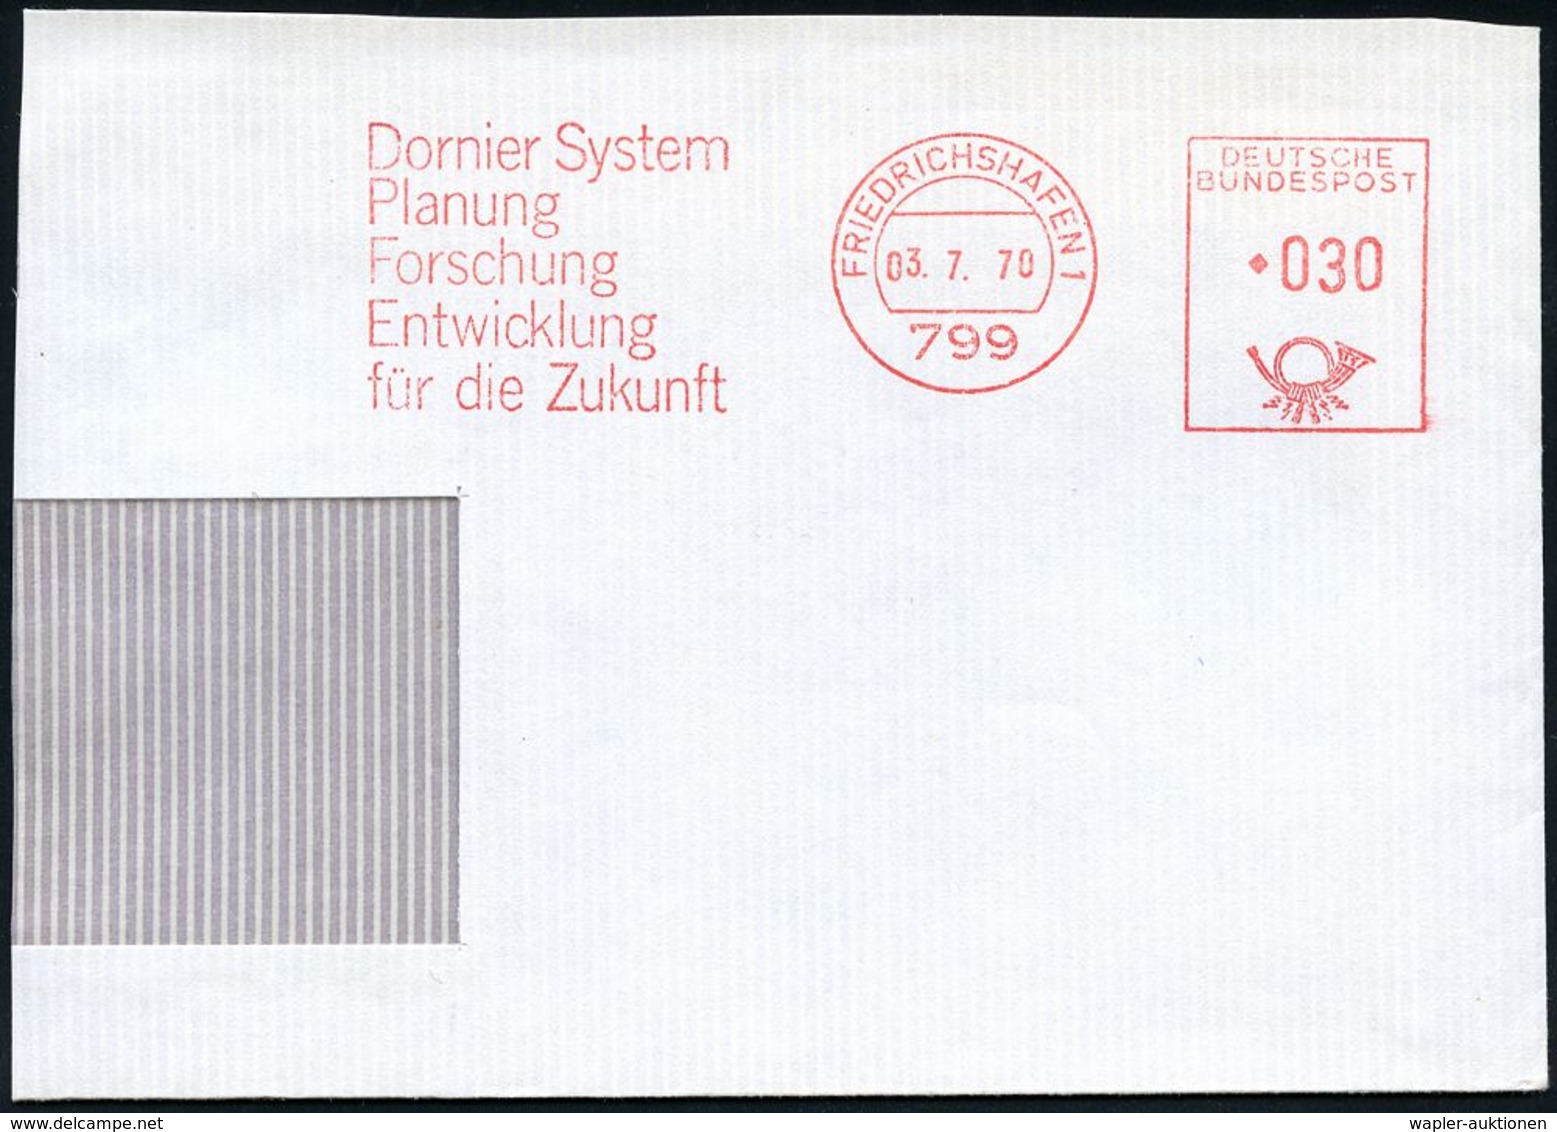 FLUGZEUGINDUSTRIE & -TYPEN : 799 #bzw.# 88045 FRIEDRICHSHAFEN 1/ Dornier System.. #bzw.# Dornier GmbH 1970/95 2 Verschie - Avions